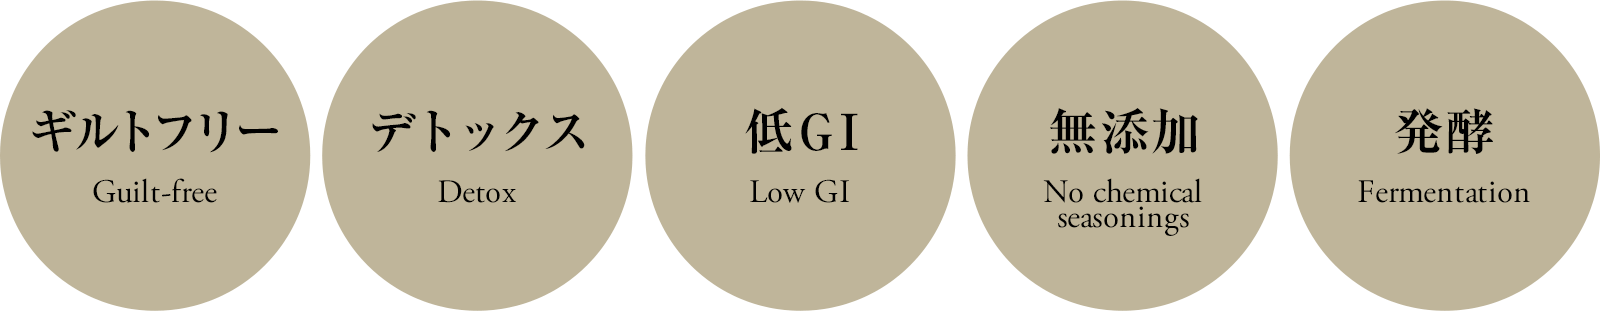 ギルトフリー デトックス 低GI 無添加 発酵